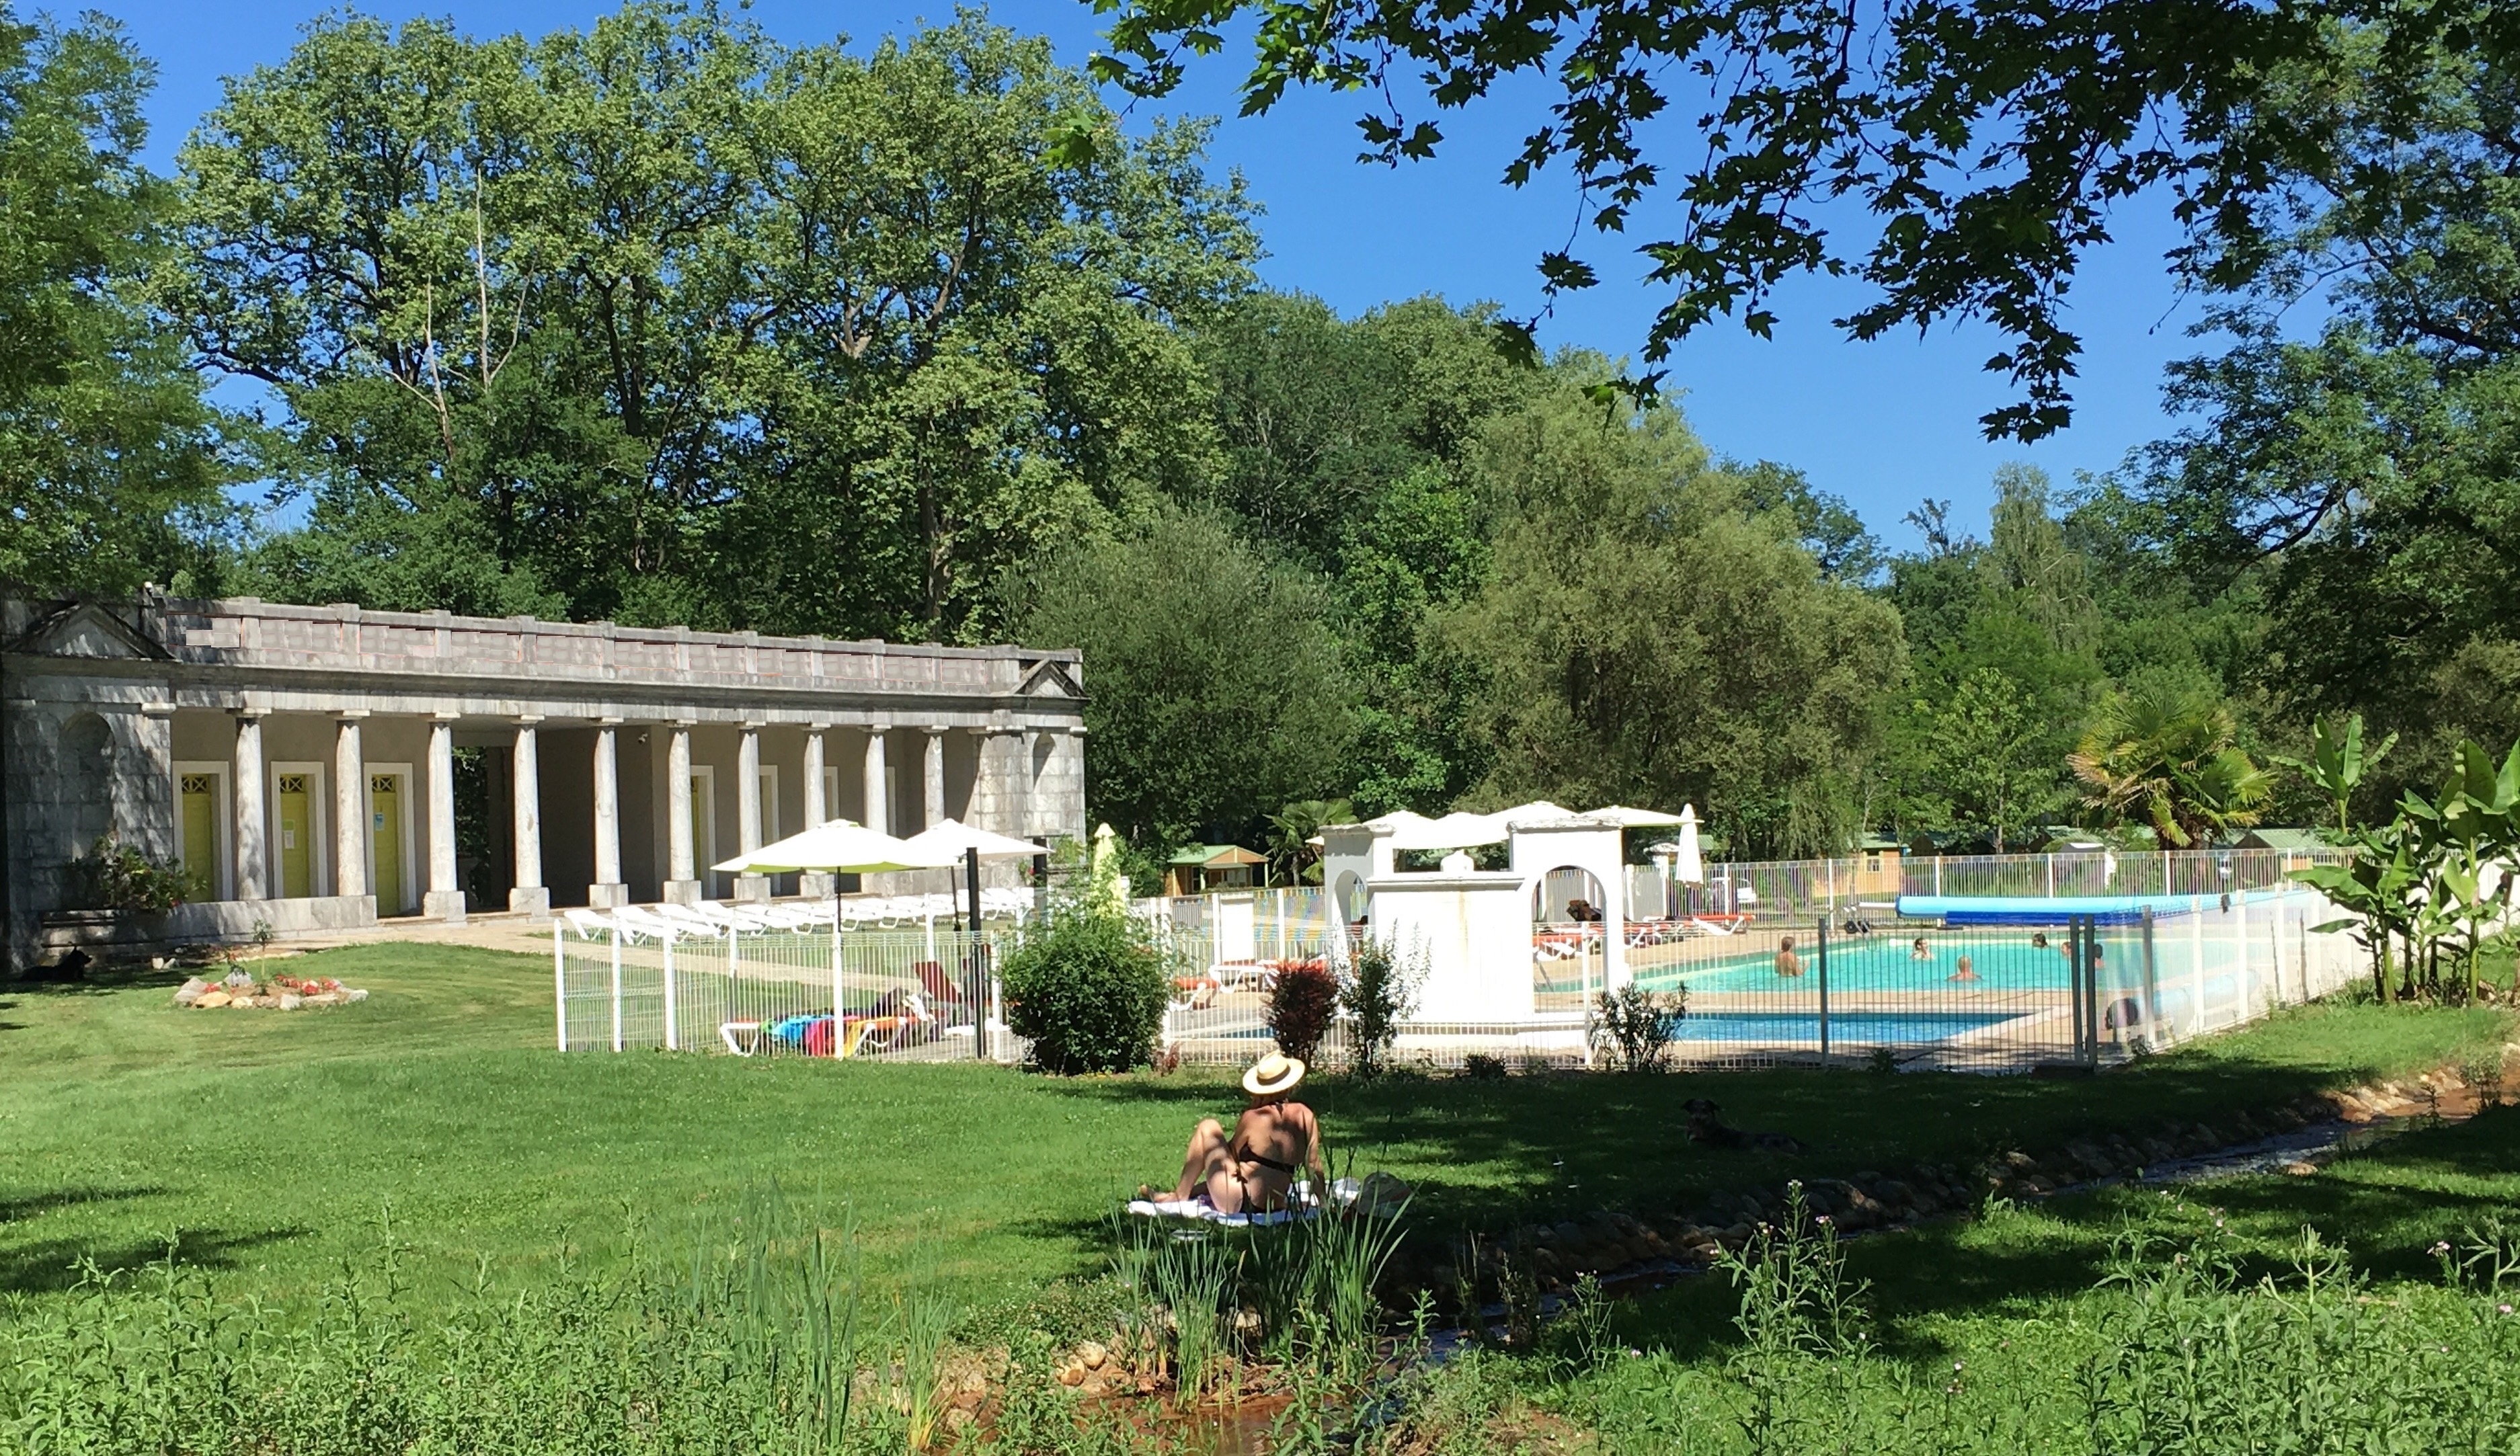  Camping Parc D'audinac Les Bains - Saint-Girons